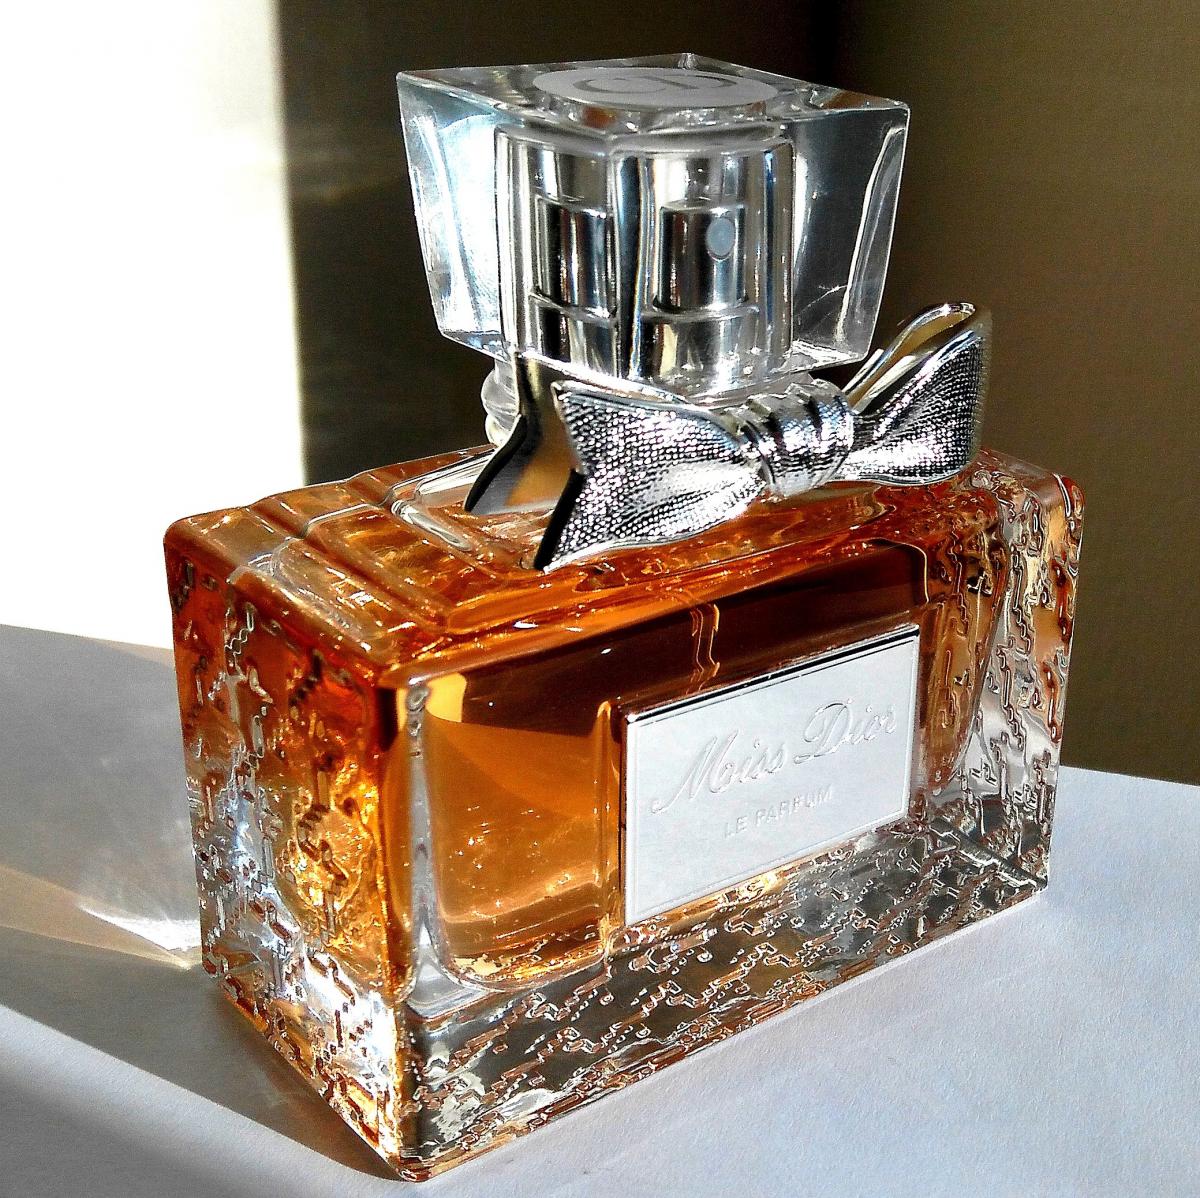 Miss Dior Le Parfum Dior άρωμα - ένα άρωμα για γυναίκες 2012